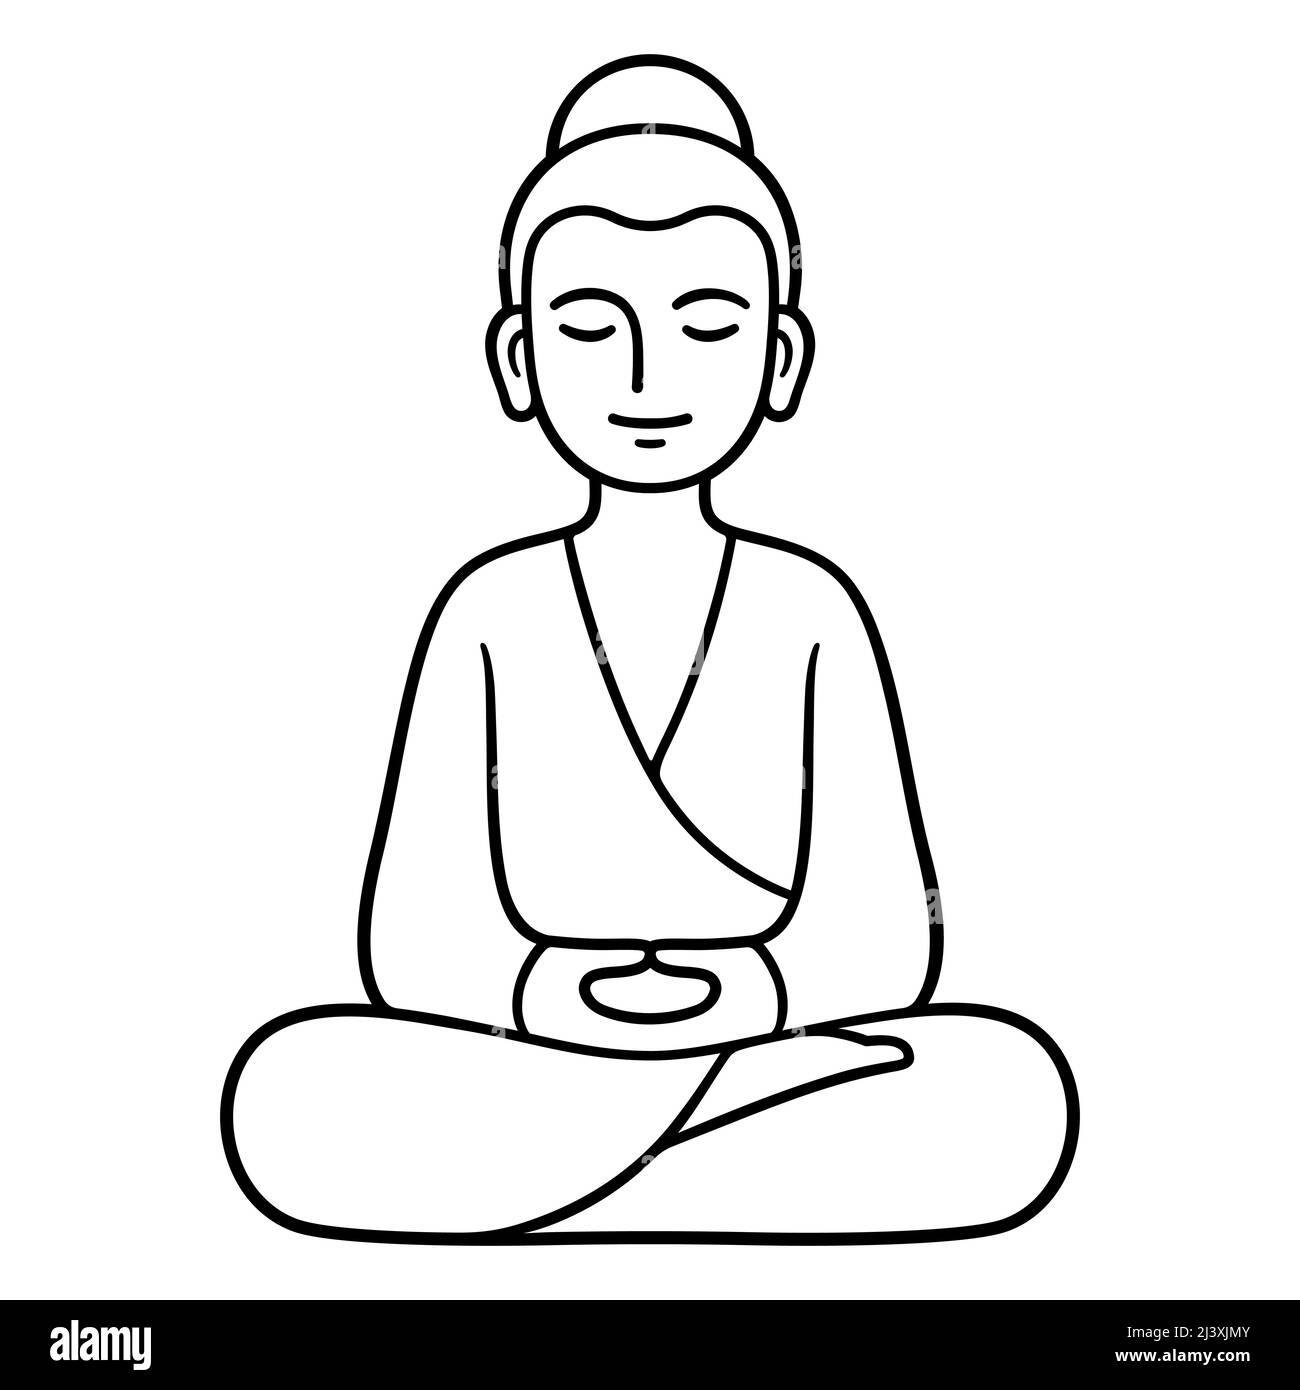 Statua di Buddha semplice e minimale seduta in meditazione, tradizione buddista Zen. Disegno grafico a linee bianche e nere, illustrazione vettoriale isolata. Illustrazione Vettoriale